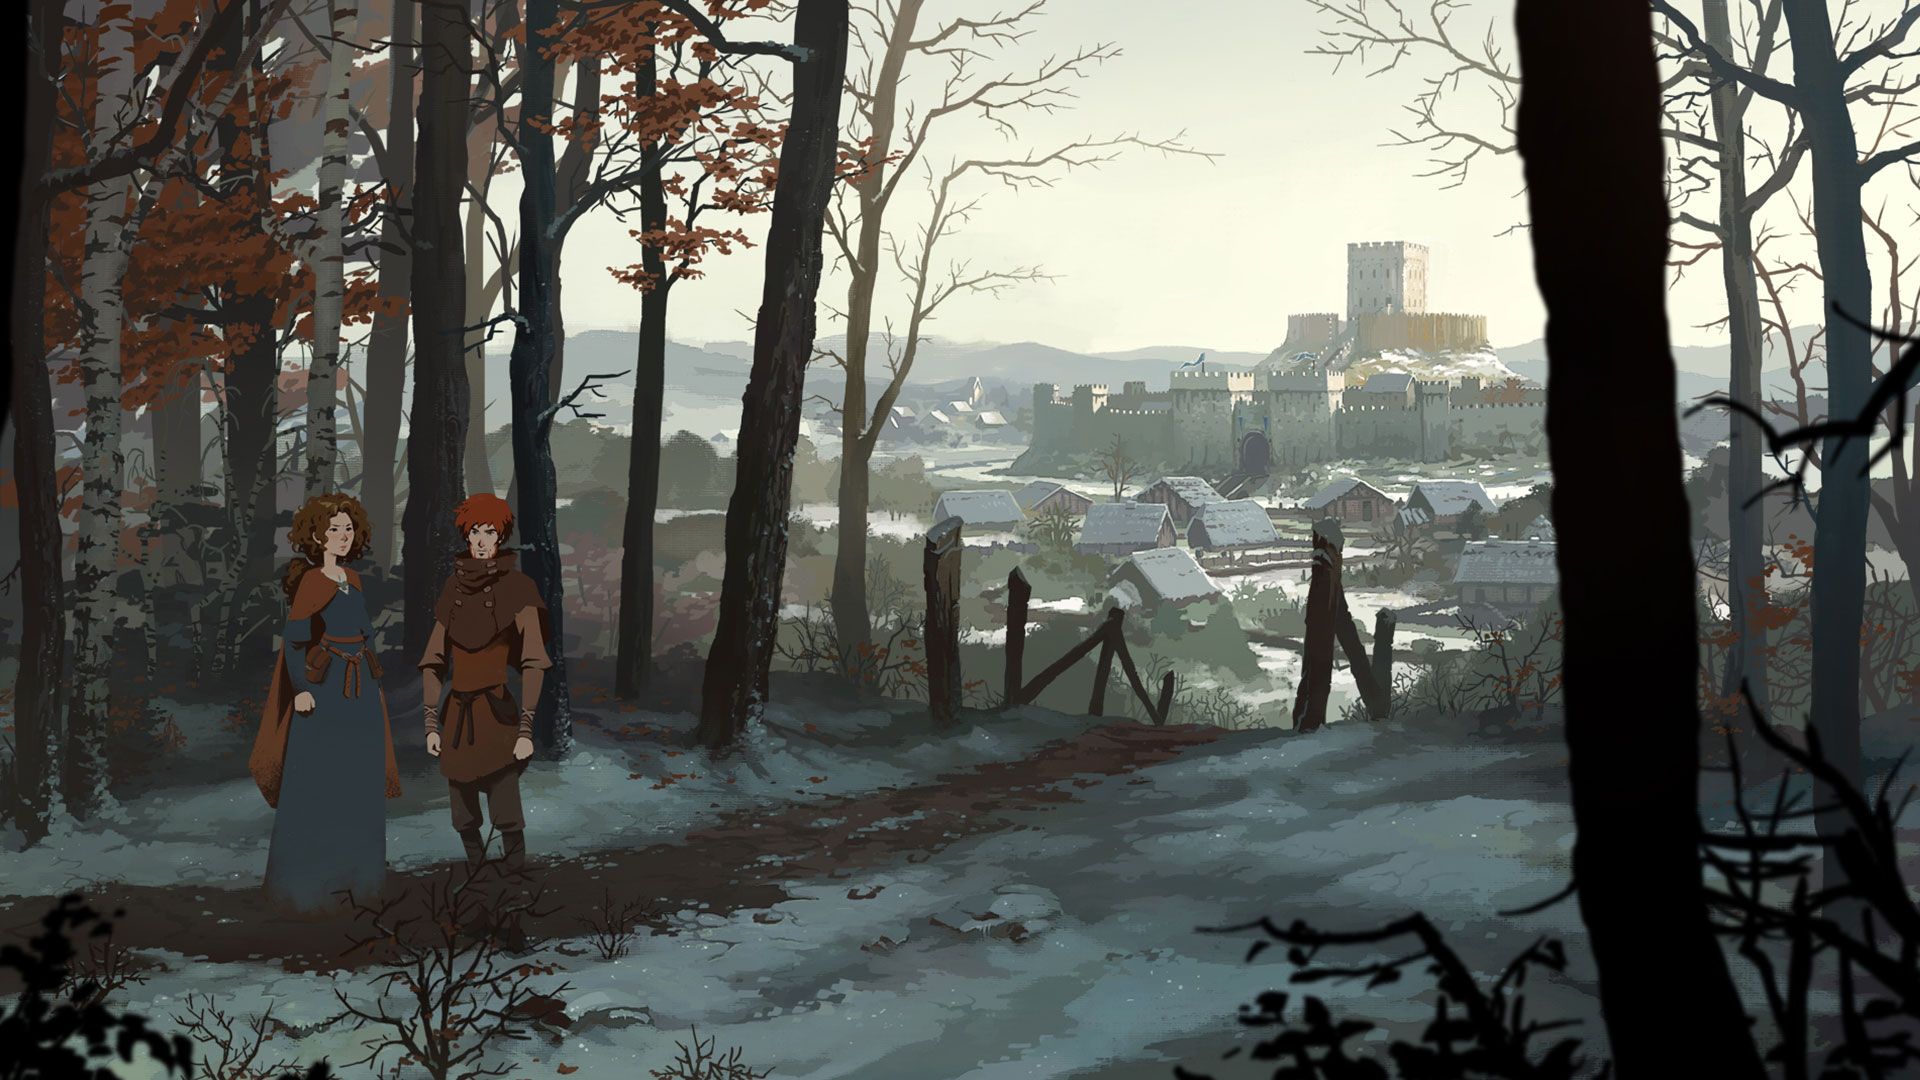 Tangkapan layar dari The Pillars of the Earth karya Ken Follett, menampilkan dua karakter di hutan dengan latar belakang kota